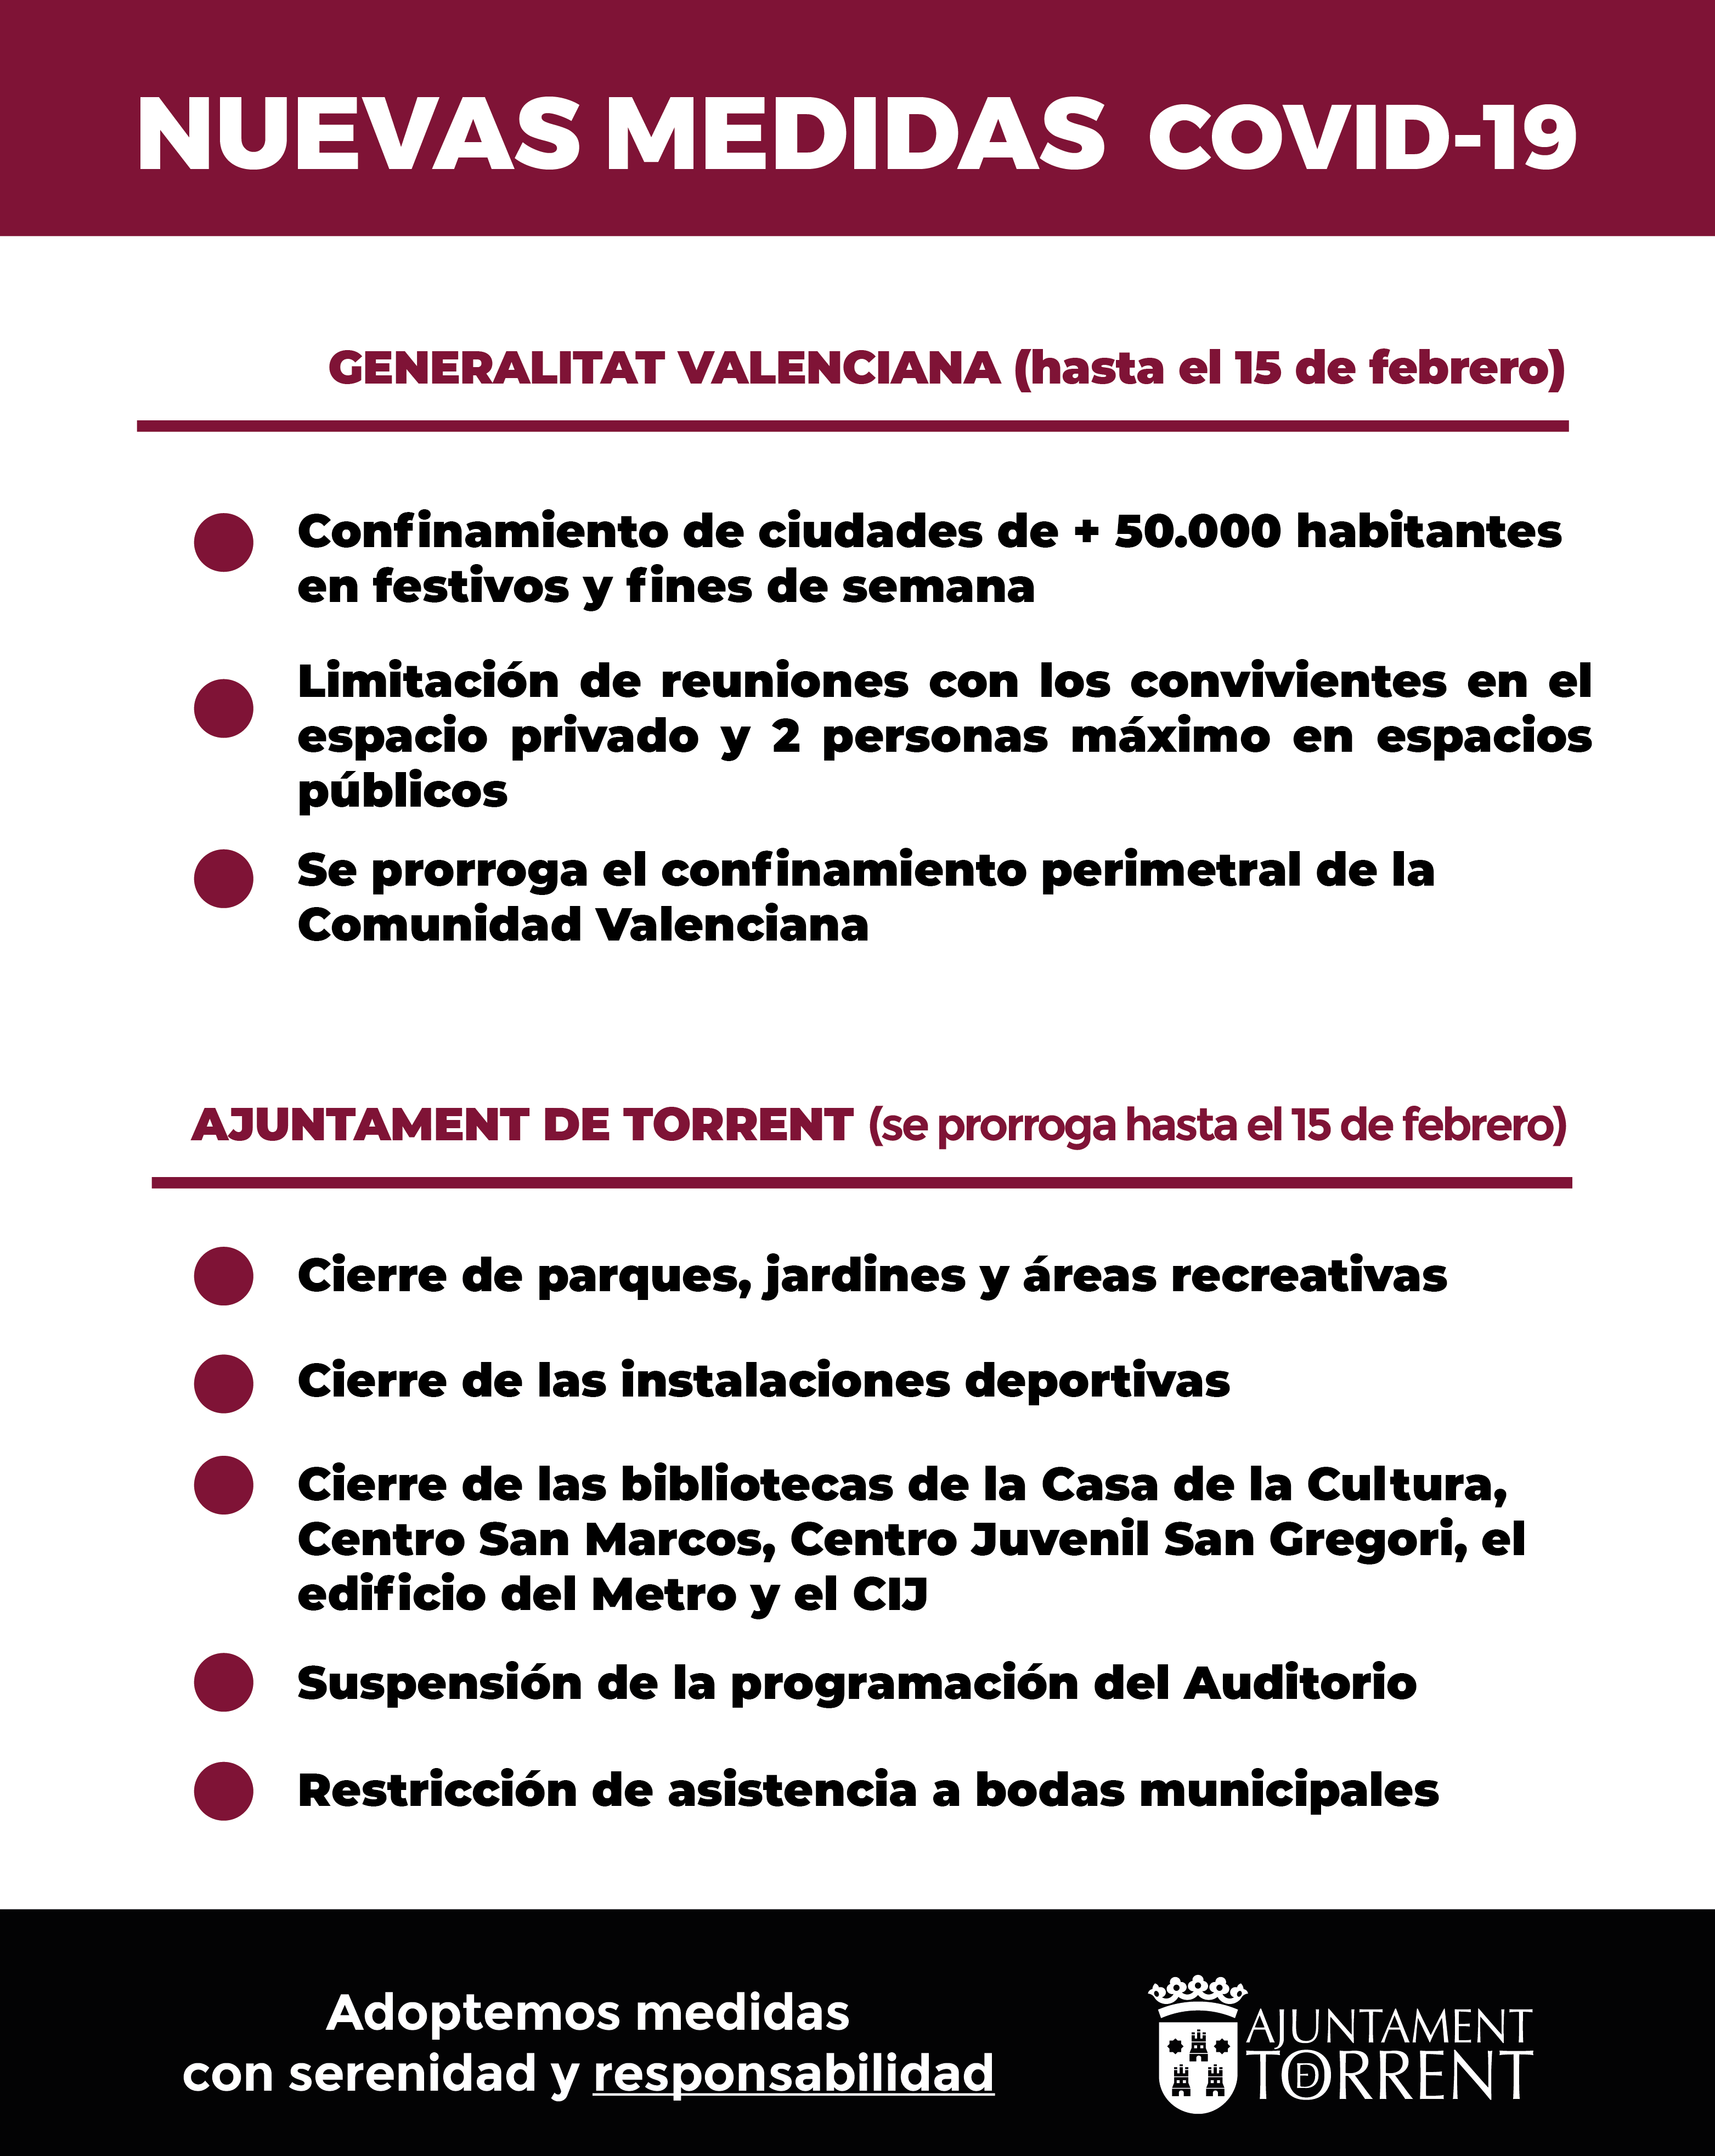 La Generalitat aprueba un nuevo paquete de medidas contra el COVID-19 en la Comunitat Valenciana